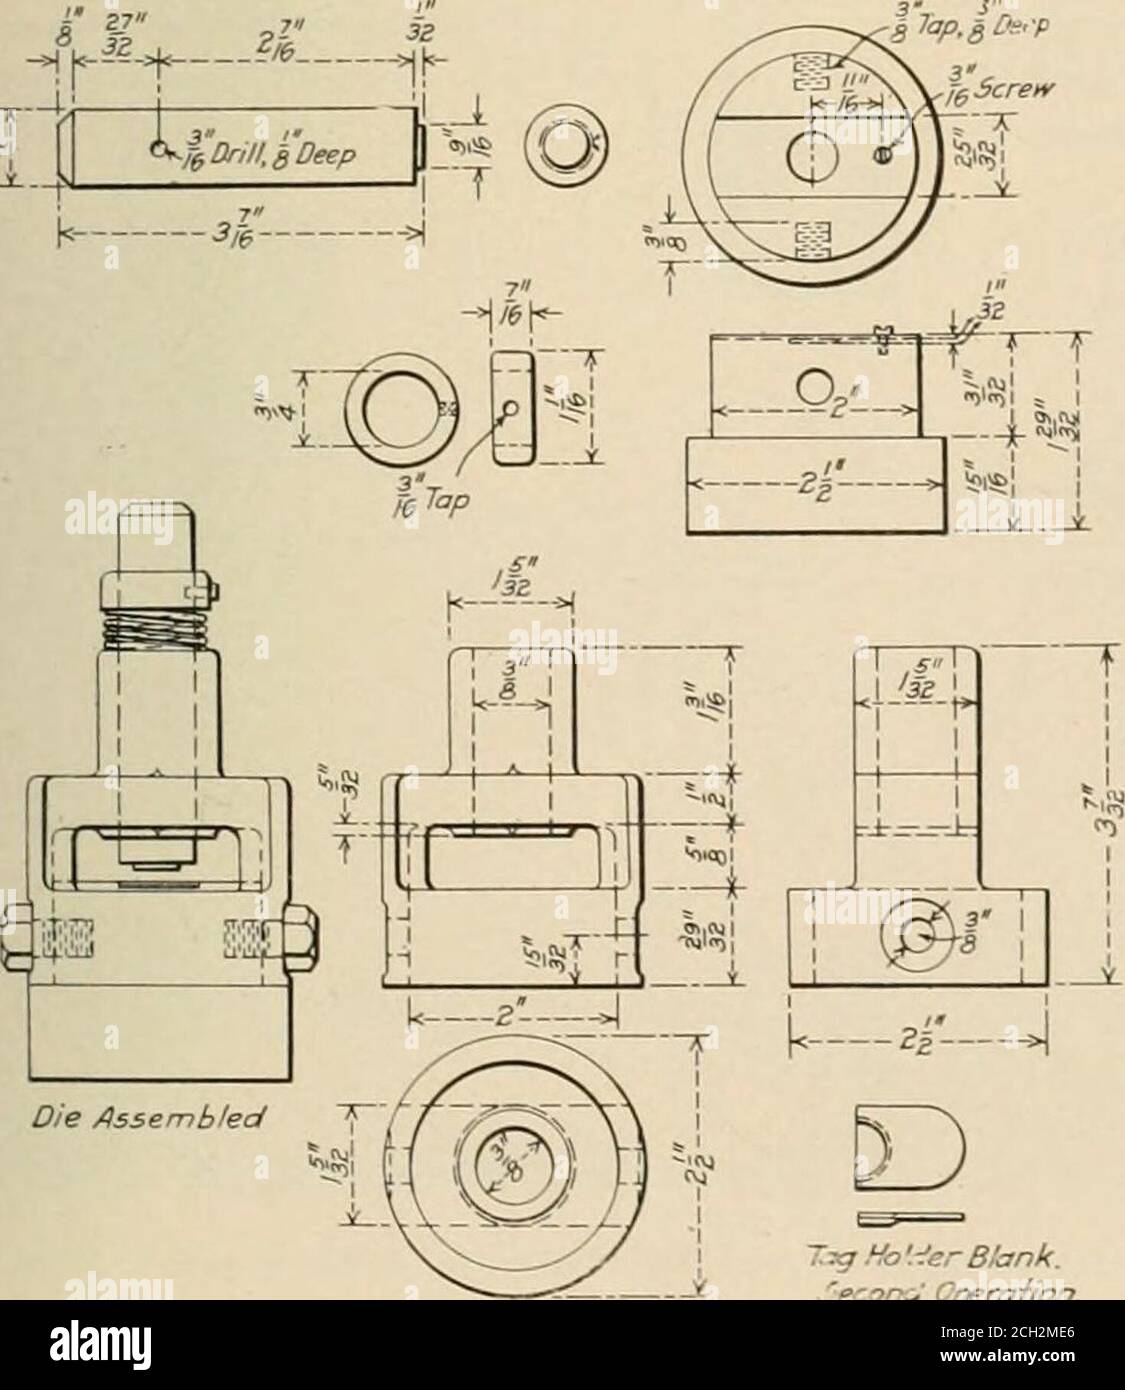 Ingénieur mécanique ferroviaire . Figure 1 — méthode d'application des  étiquettes de date aux clips de numérotation de jauge. Figure 1 représente  un cadran de jauge de vapeur dans lequel le